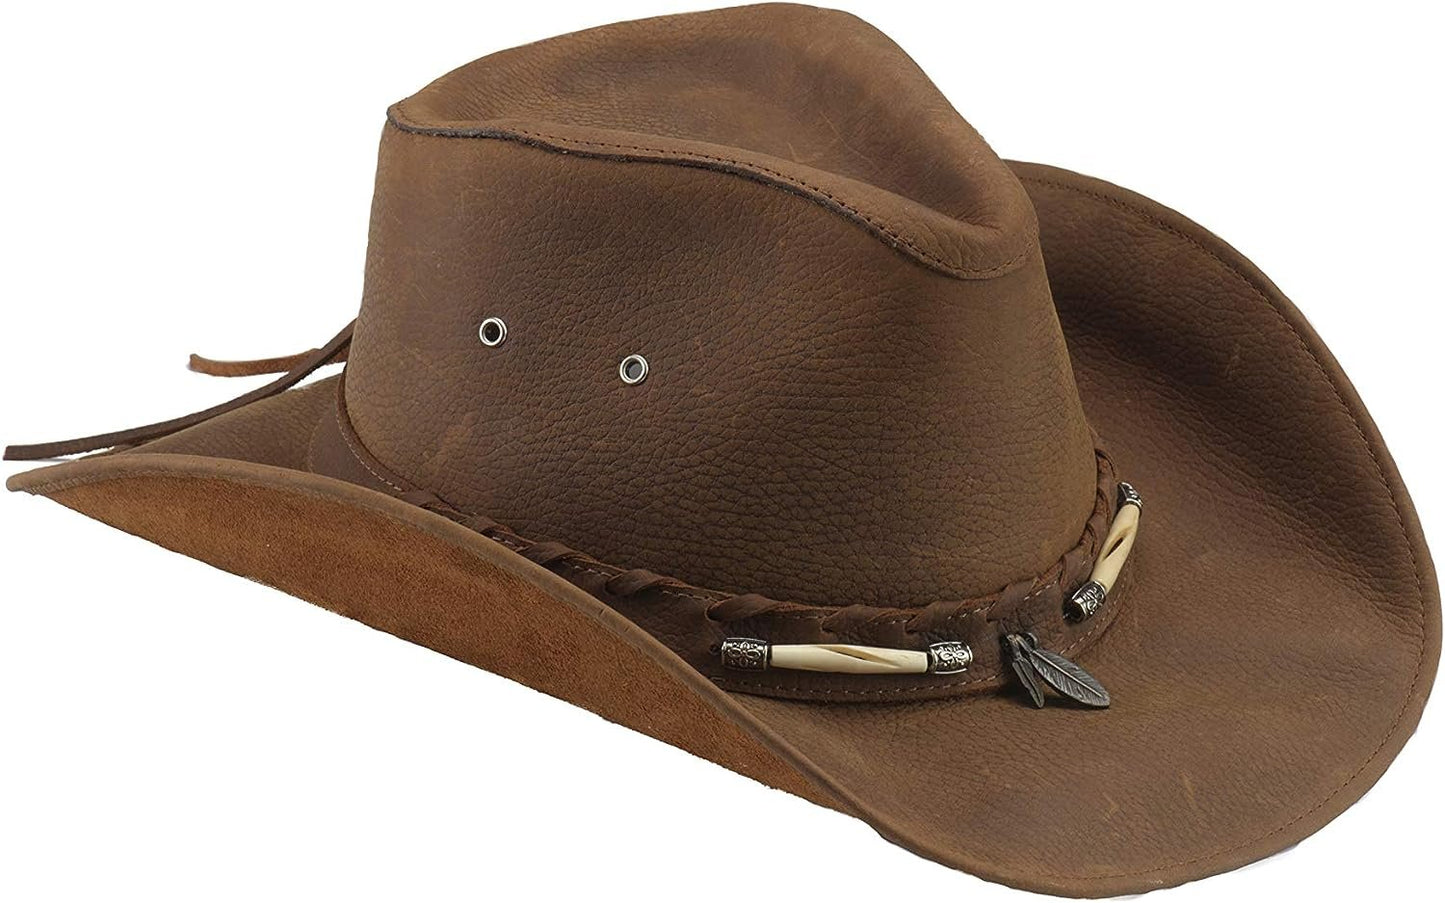 Bullhide Men's Briscoe Leather Cowboy Hat - 4052Ch